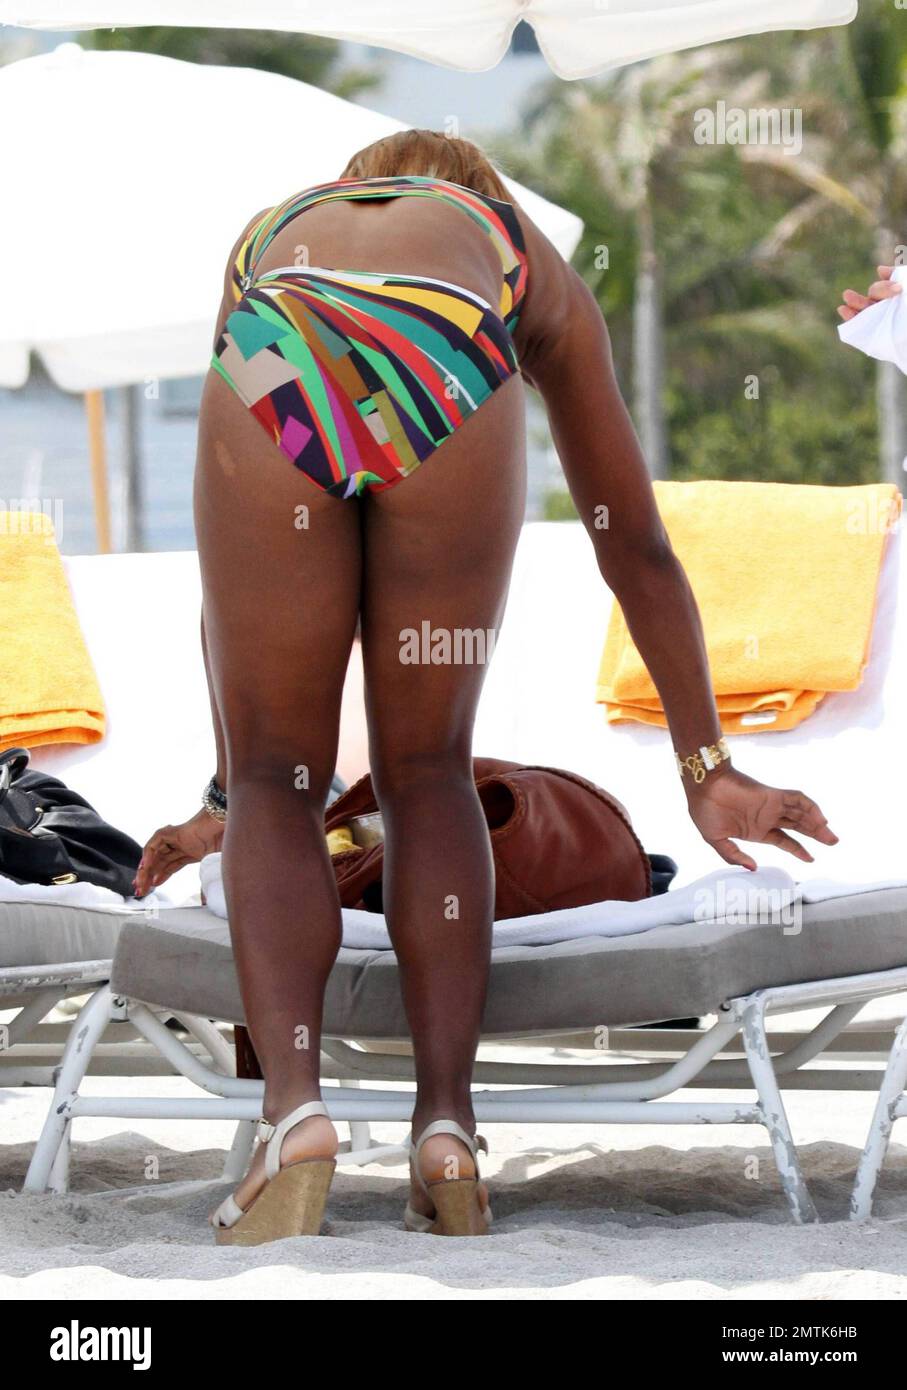 EXCLUSIF !! Serena Williams possède un maillot de bain en cutaway coloré  lors d'une pause sur la plage avec des amis à Miami, FL. 3/25/10 Photo  Stock - Alamy